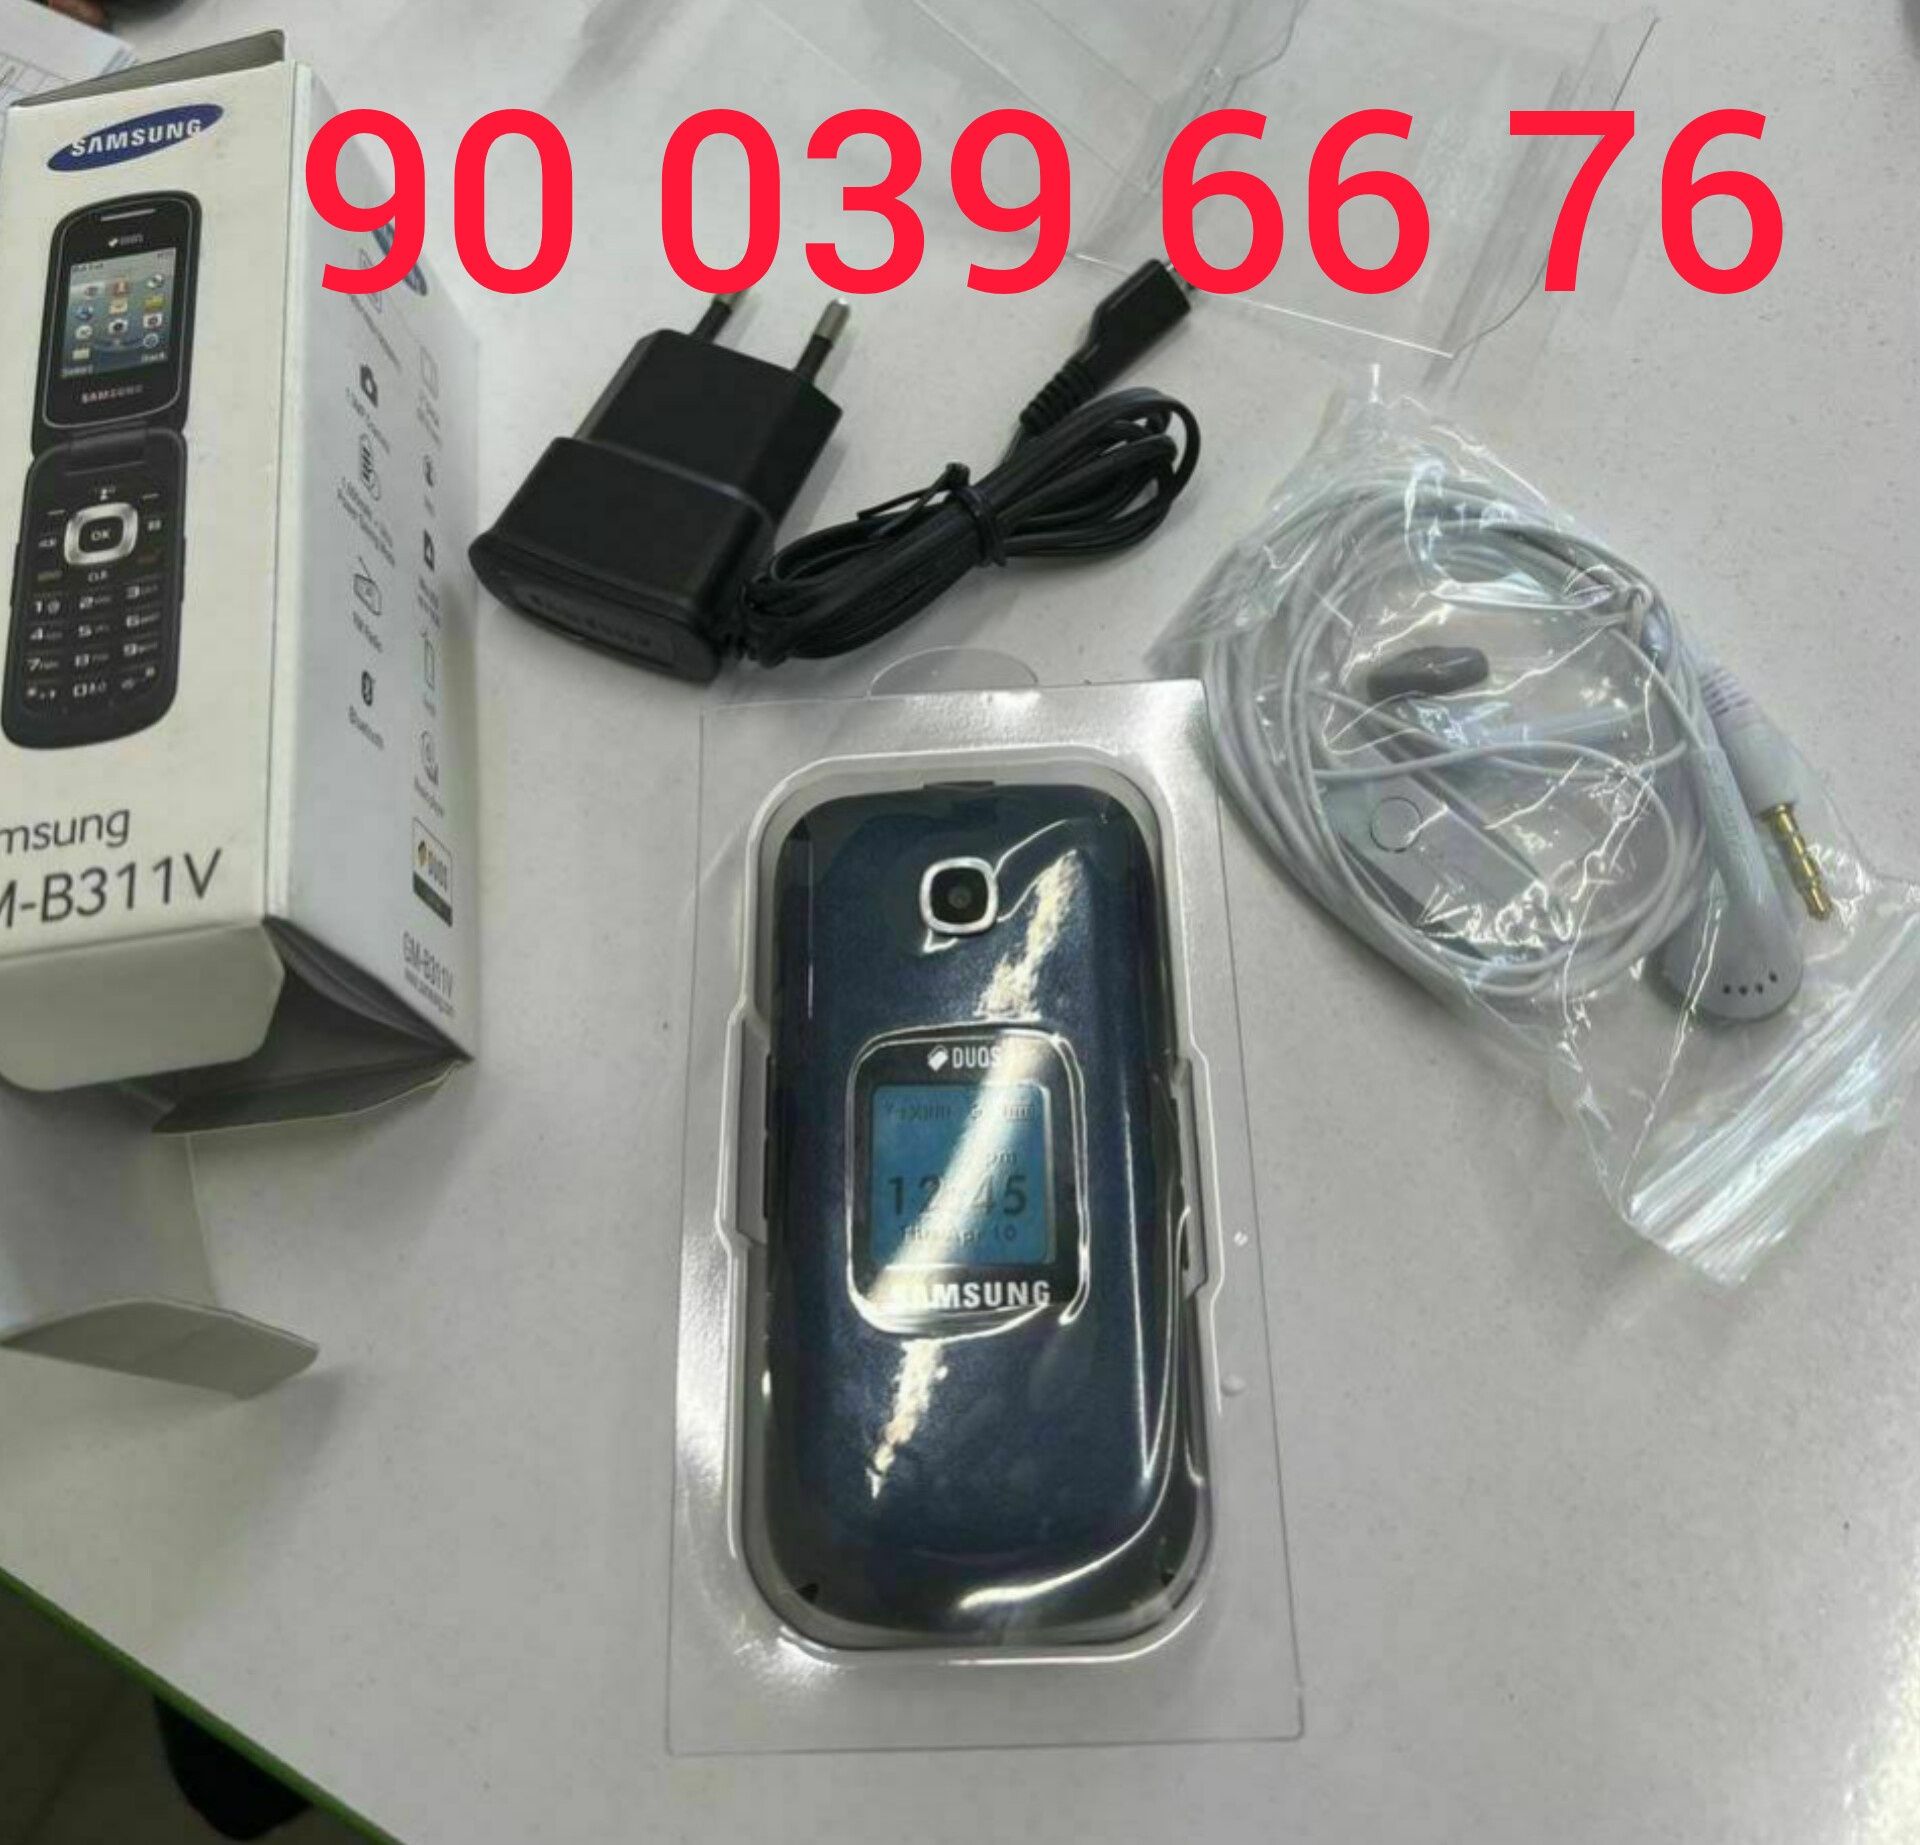 Nokia 2720 flip, Nokia 2660 flip, Gusto 3 (B311V) Samsung, Yengi tella